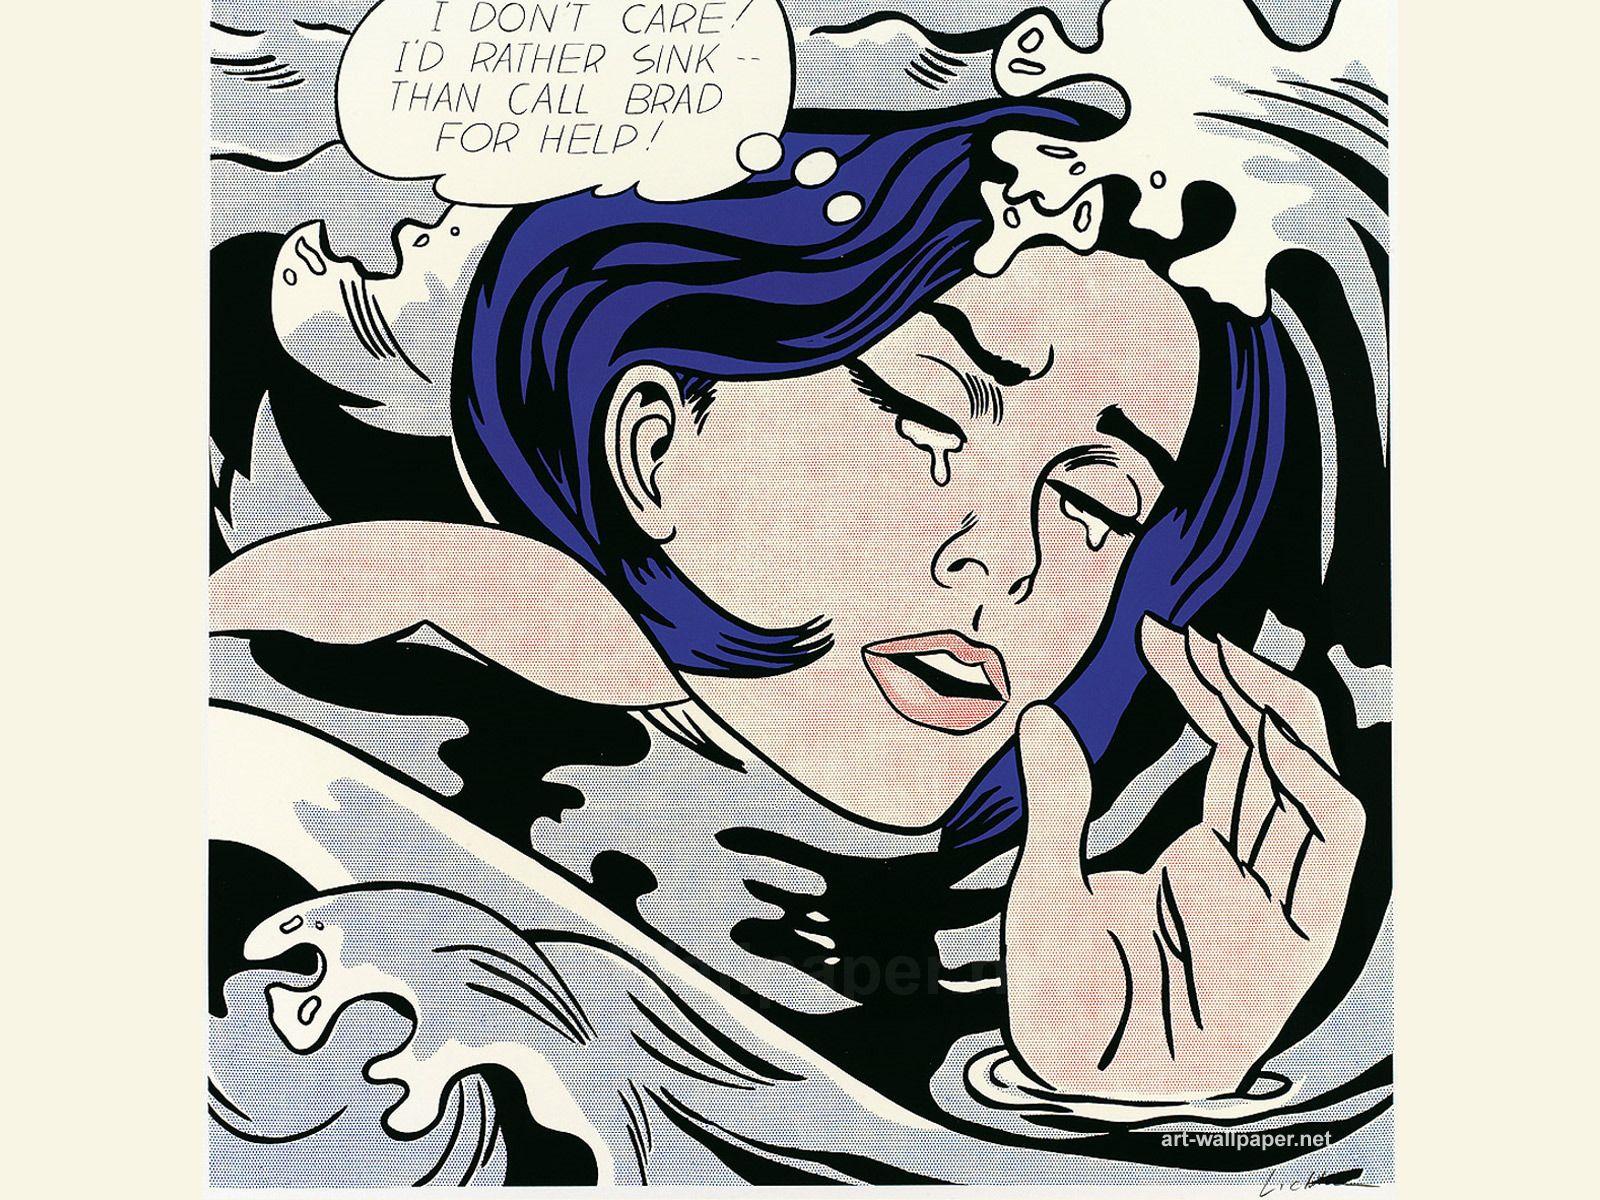 Roy Lichtenstein's Drowning Girl (1963)